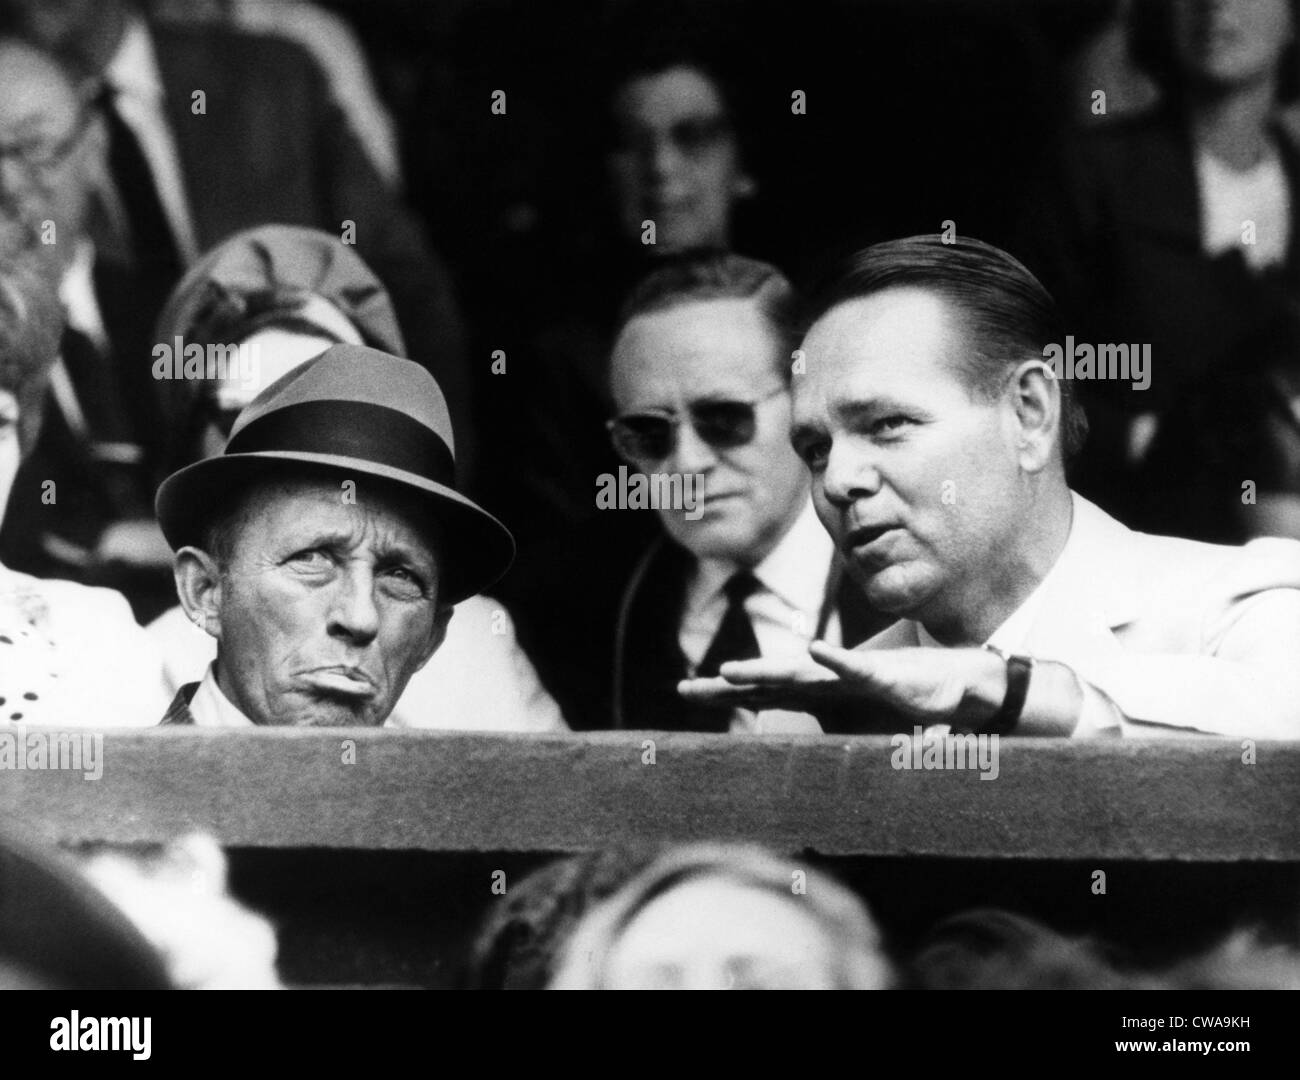 Chanteur Bing Crosby (1903-1977), champion de tennis Jack Kramer, regardant le Emerson-Ralston demi-finales match, Wimbledon, Banque D'Images